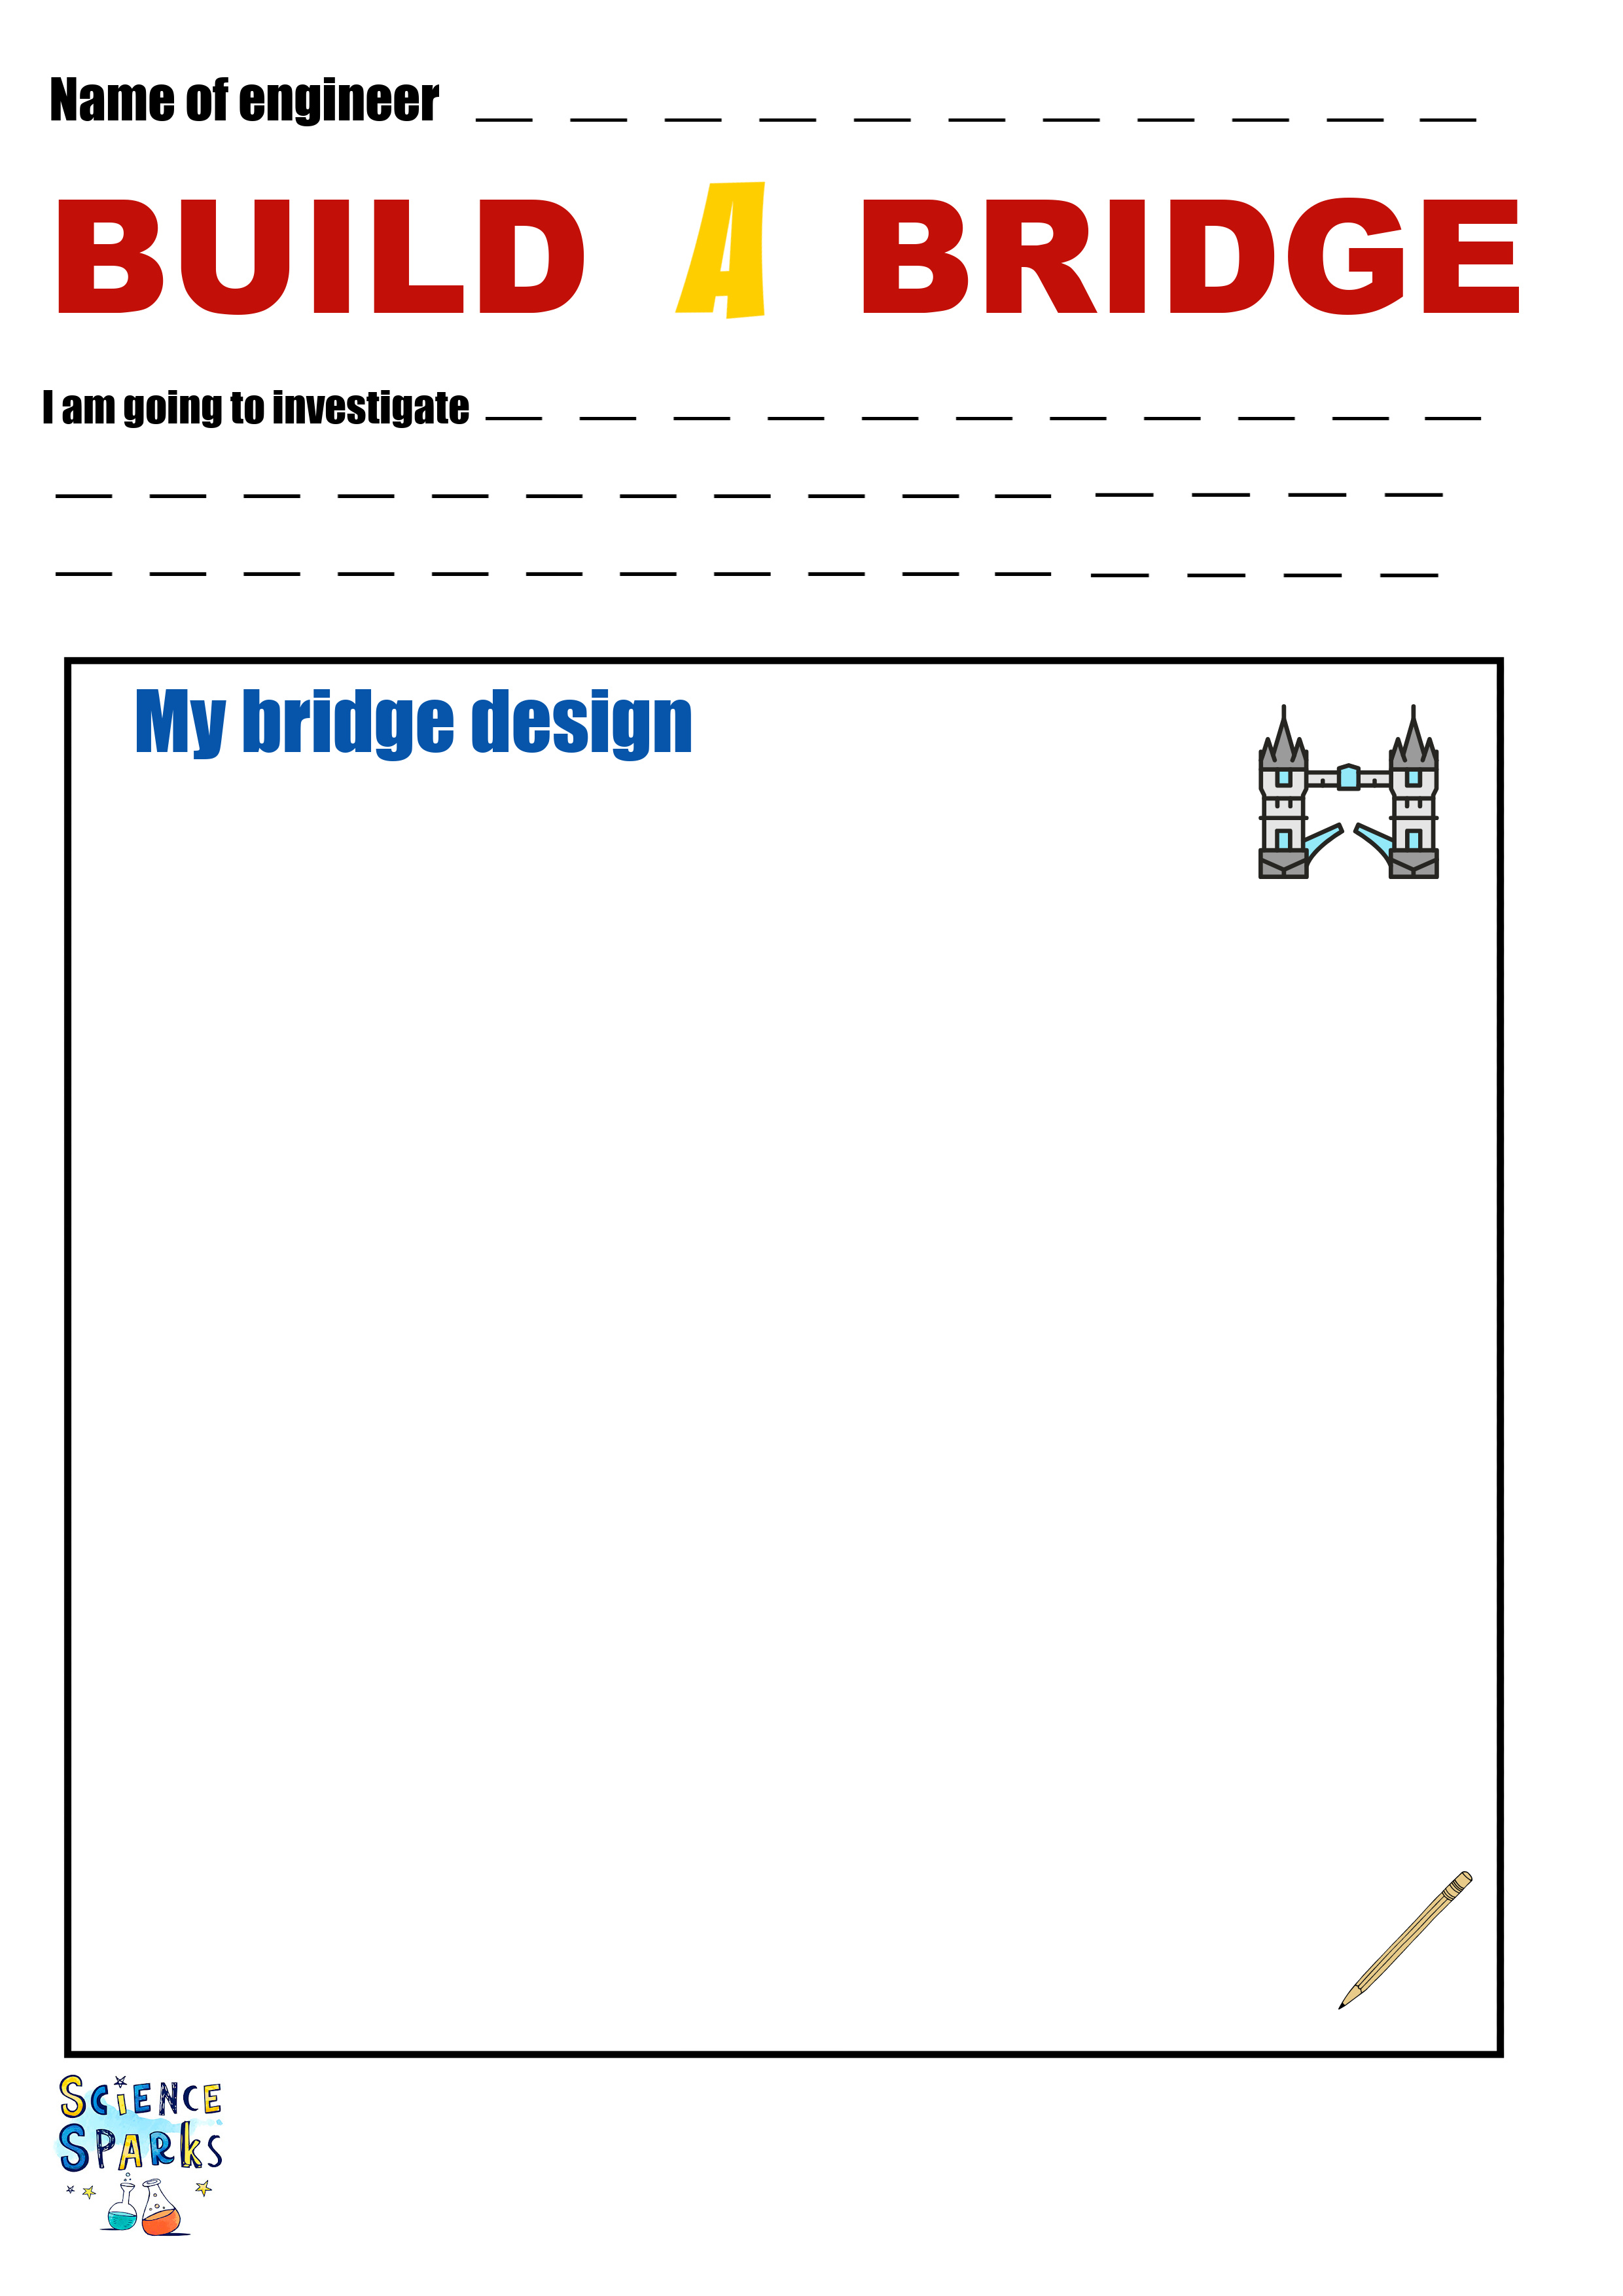 Build a bridge STEM challenge template